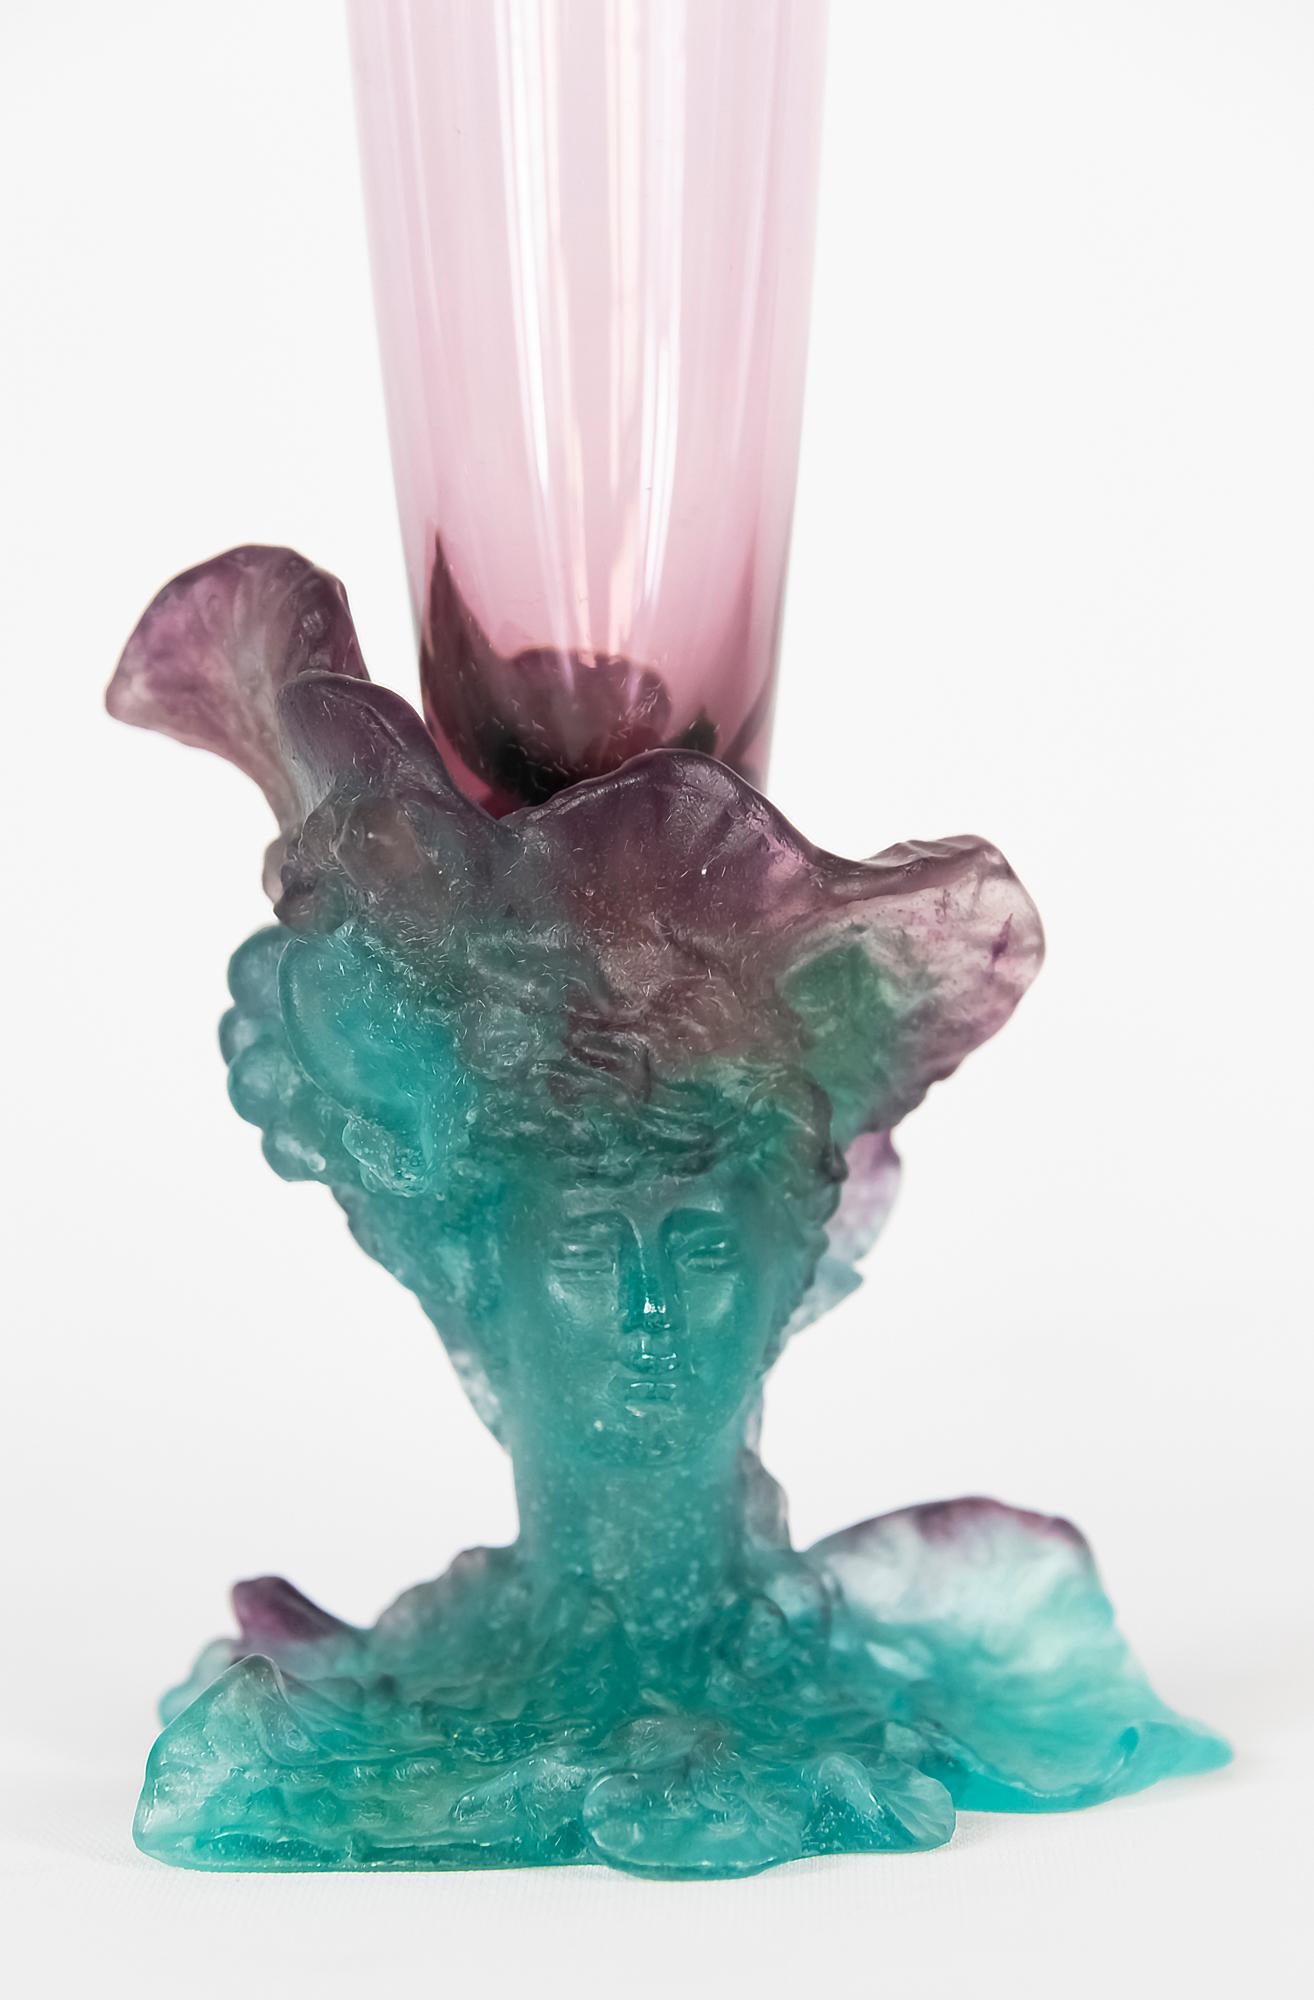 Grand vase Daum Bacchus français, avec dessus en verre améthyste et fond en pâte de verre verte, décoré d'un visage de femme, de raisins et de feuilles. Vers 2000.
Signé 